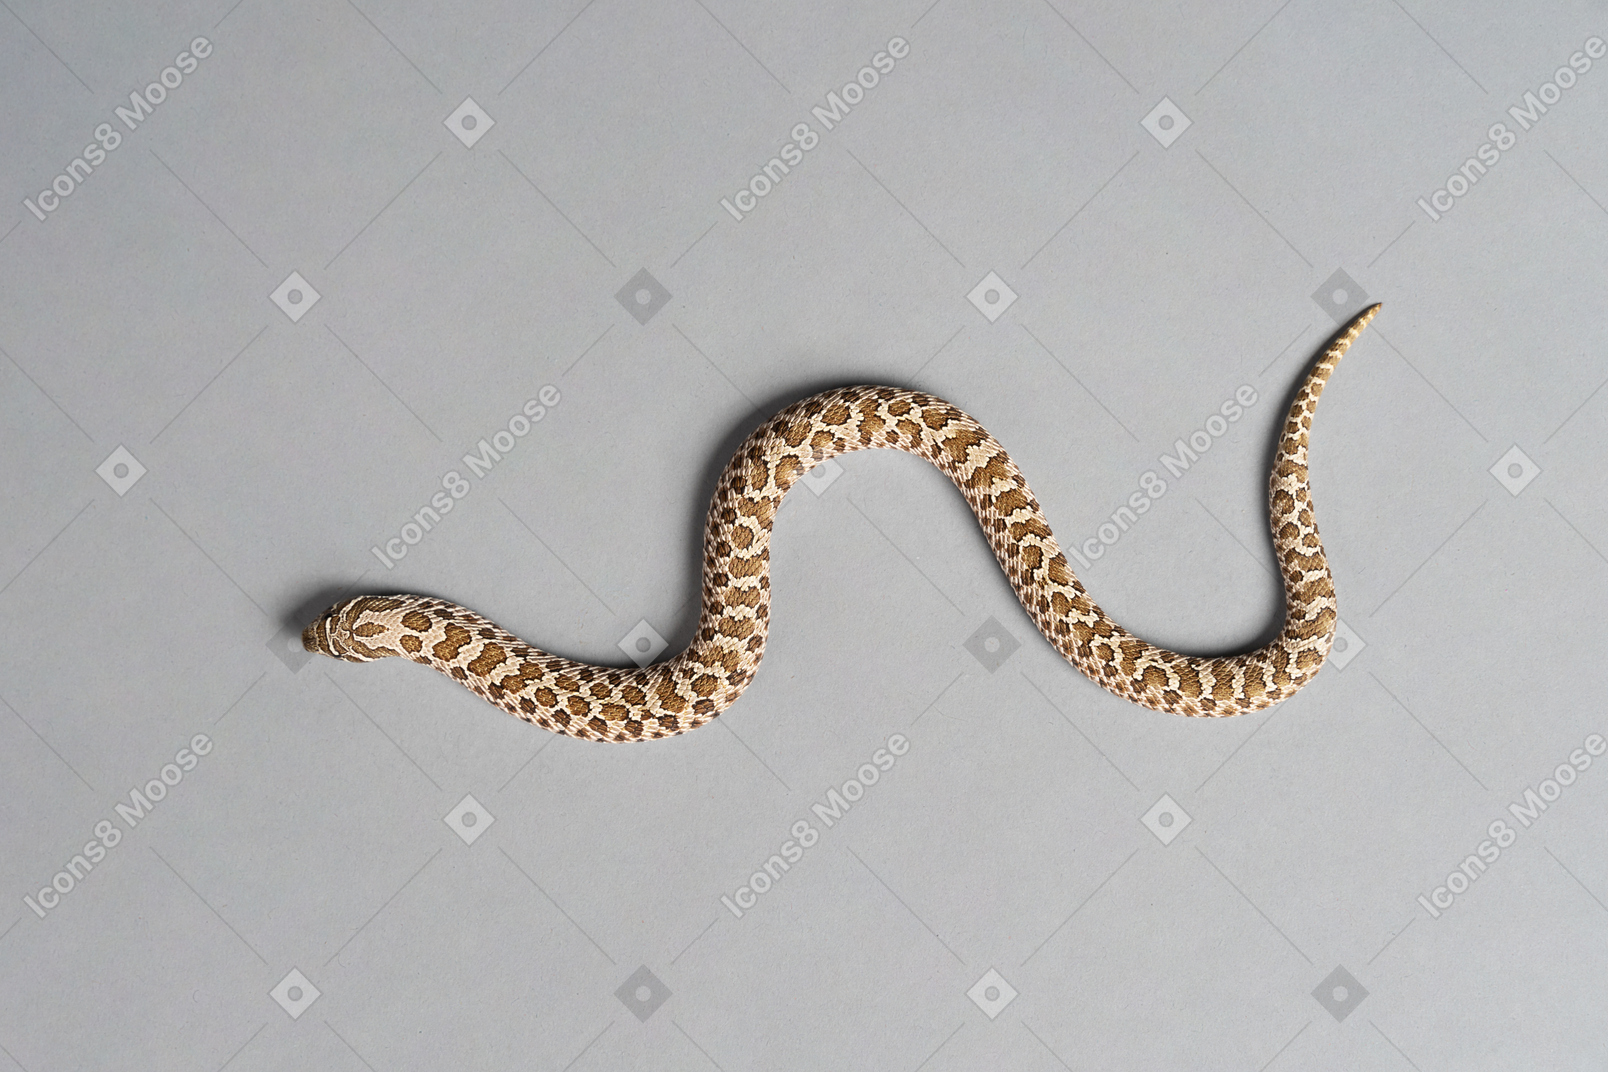 Un petit serpent de maïs